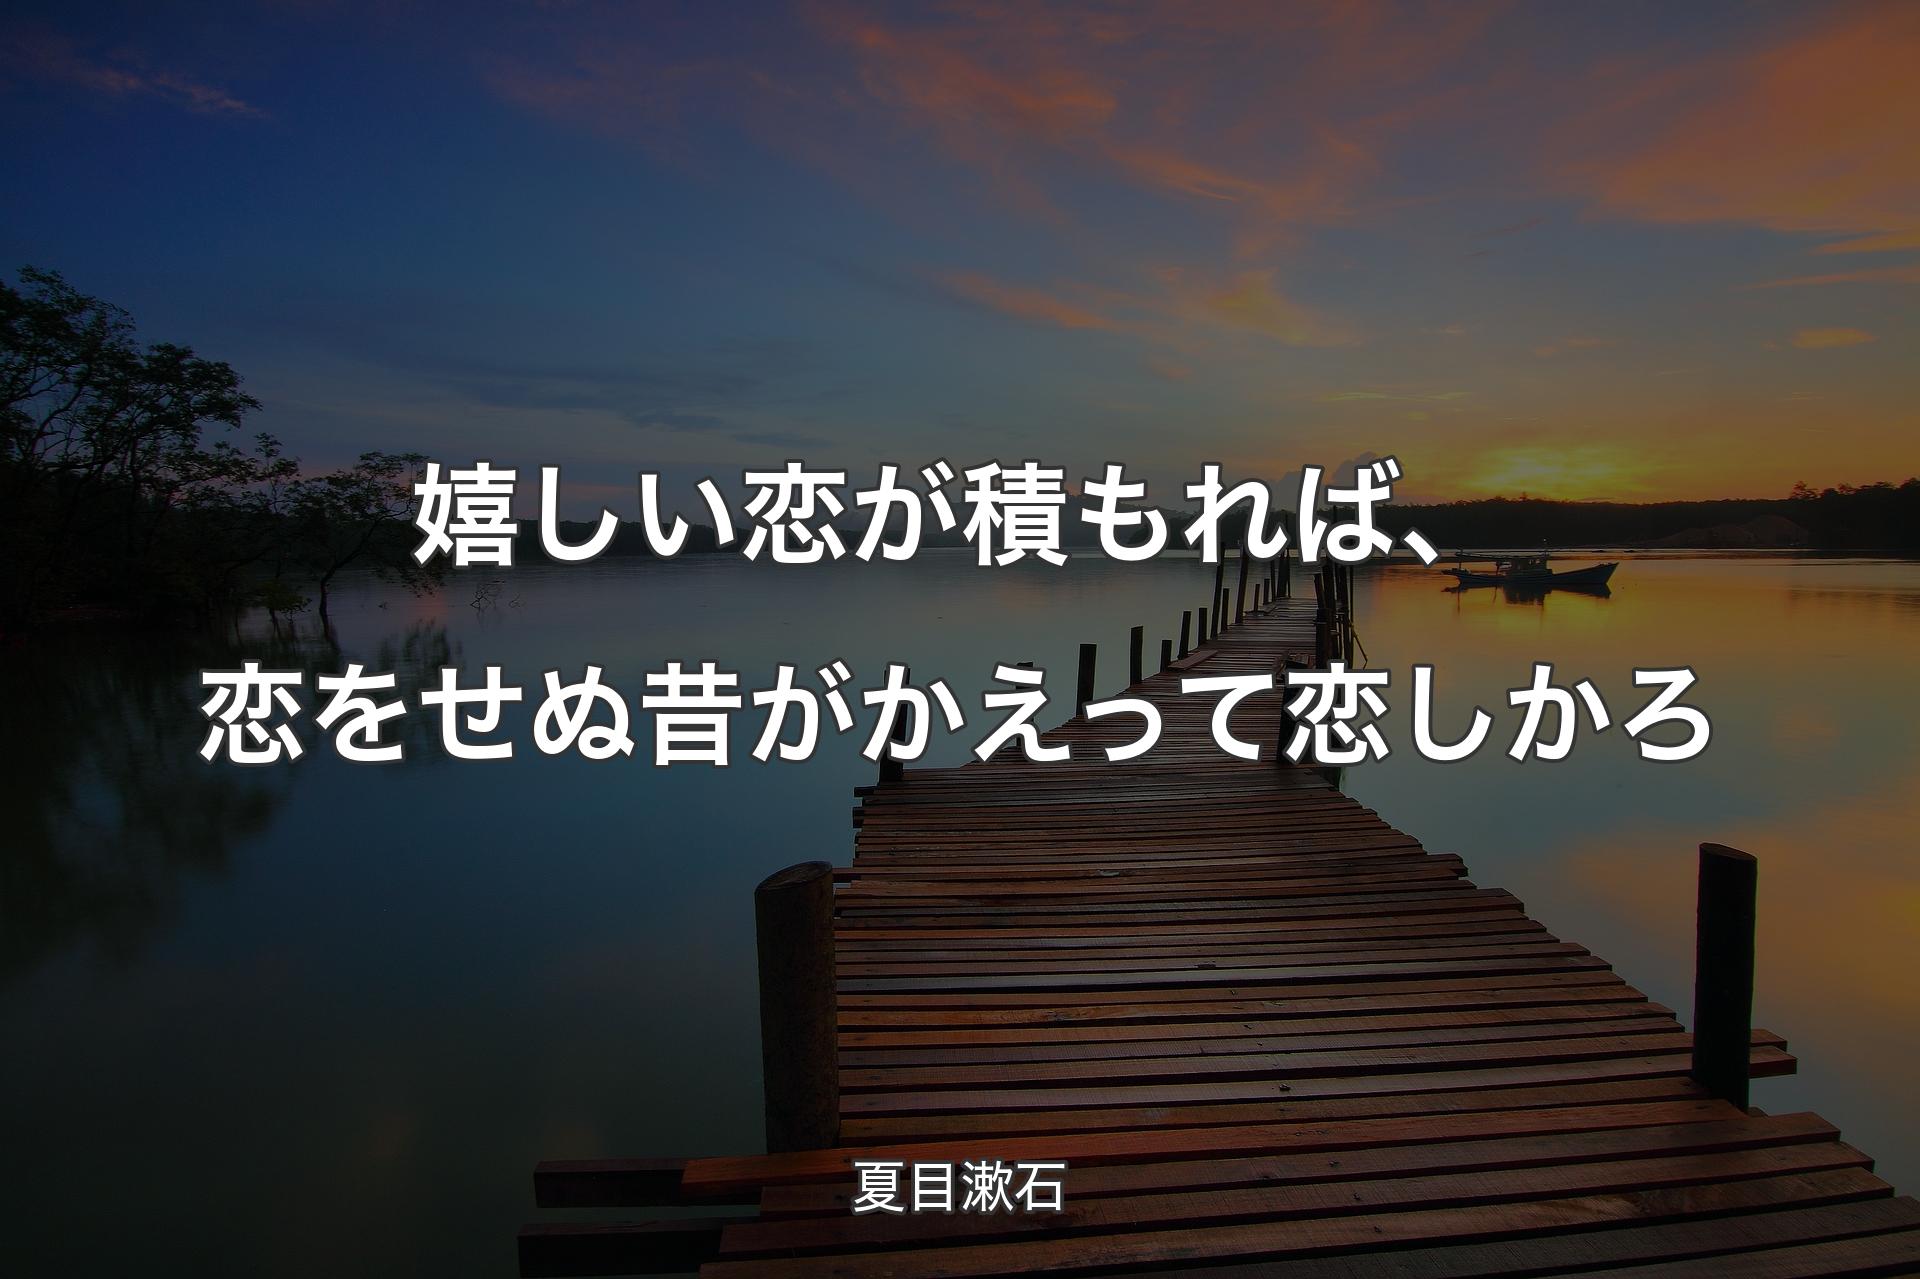 嬉しい恋が積もれば、恋をせぬ昔がかえって恋しかろ - 夏目漱石